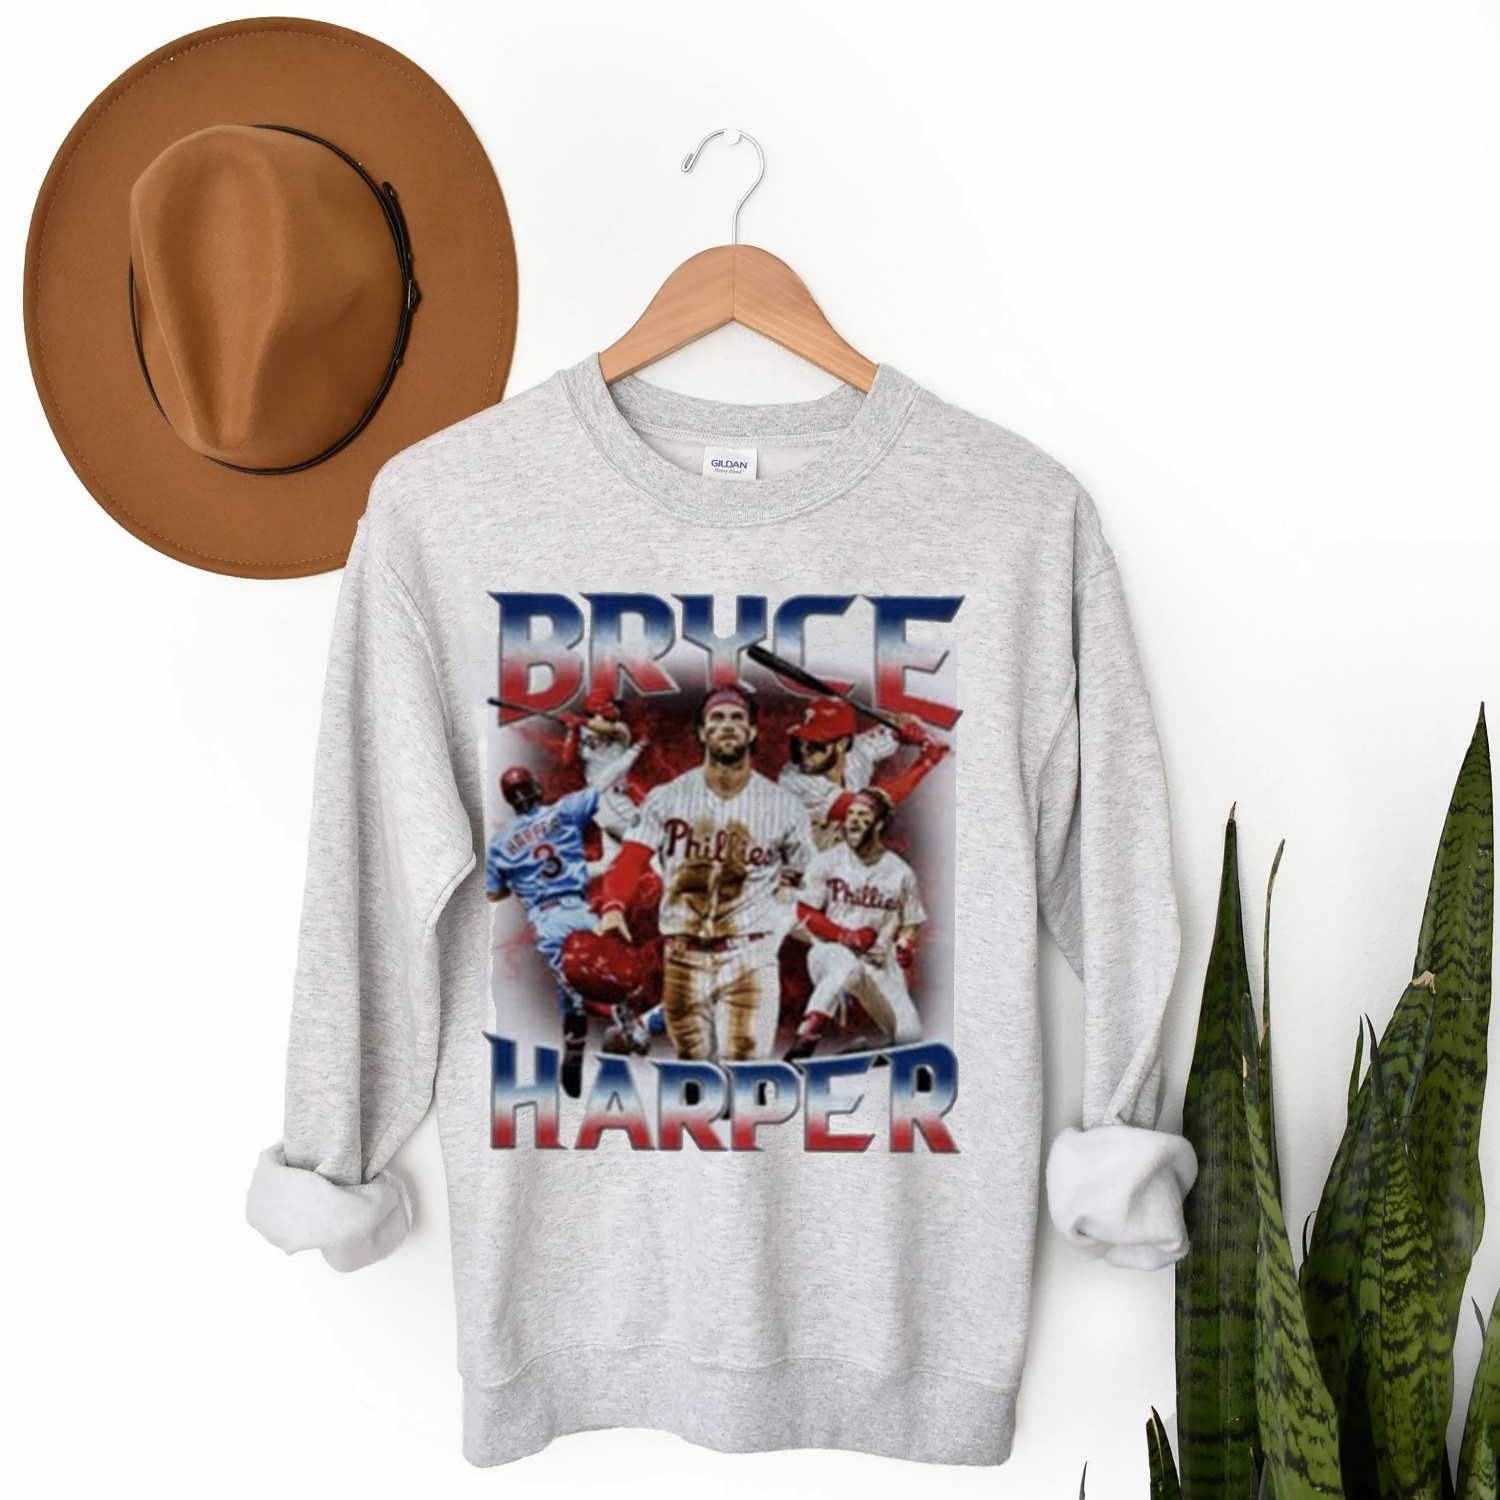 Phillies Bryce Harper Vintage Sweatshirt, Phillies Harper 03 World Series T Shirt